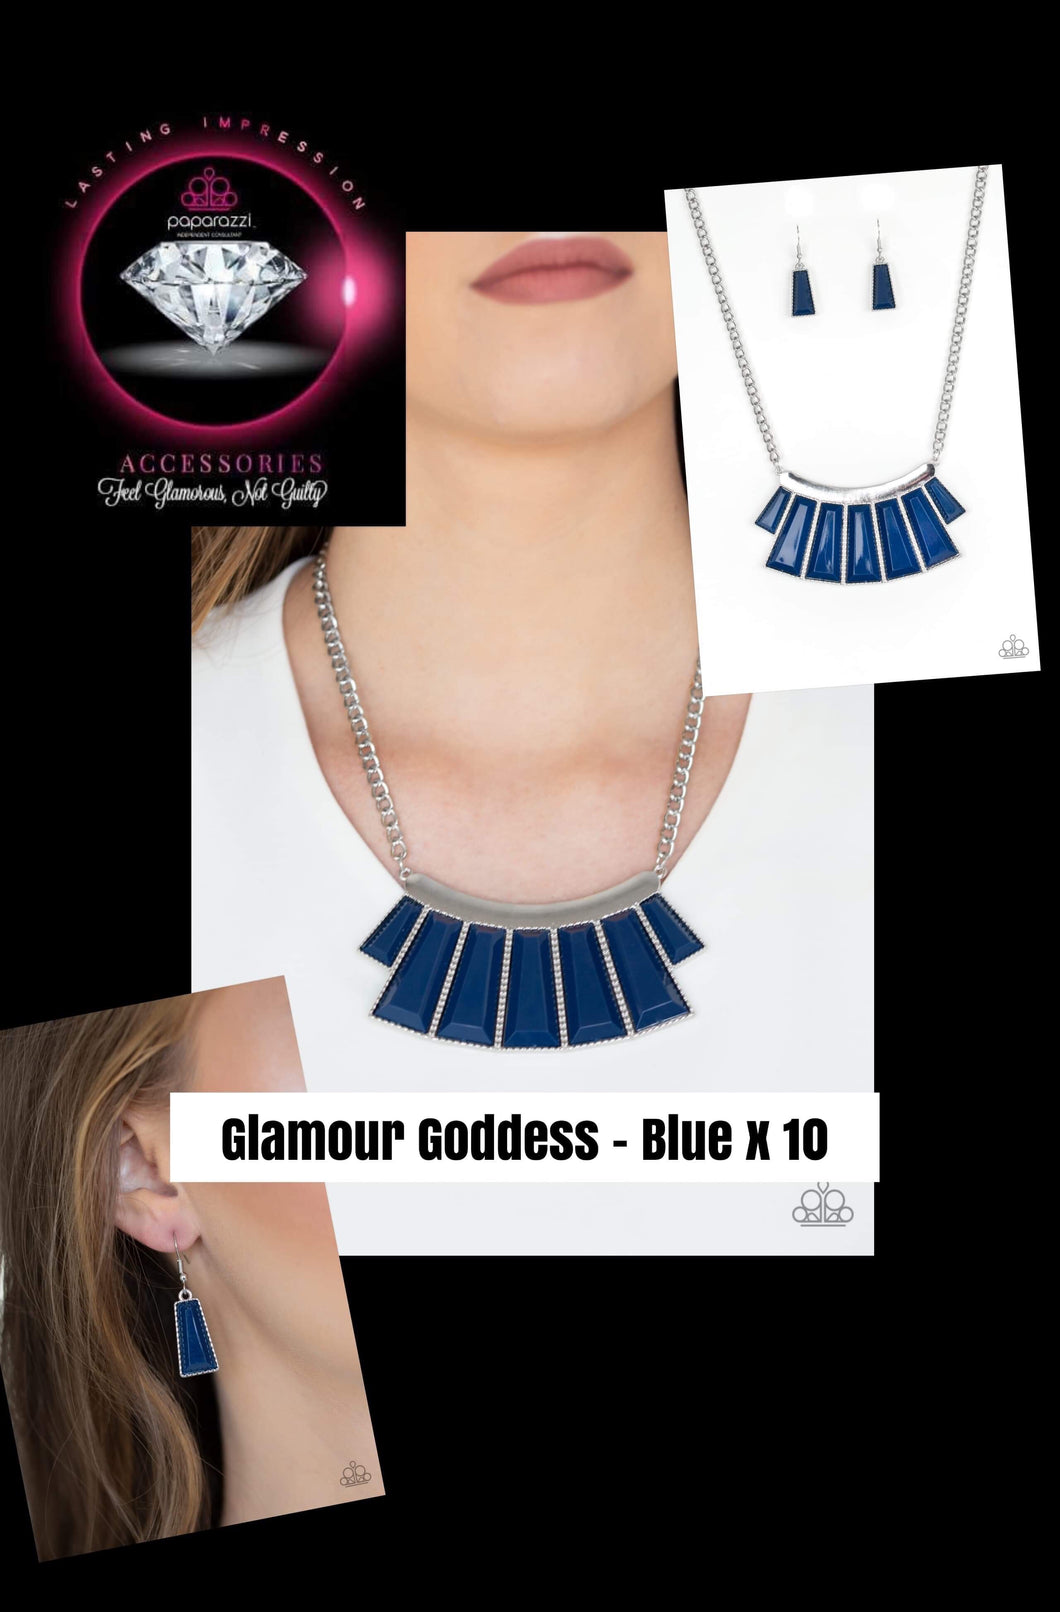 Glamour Goddess - Blue